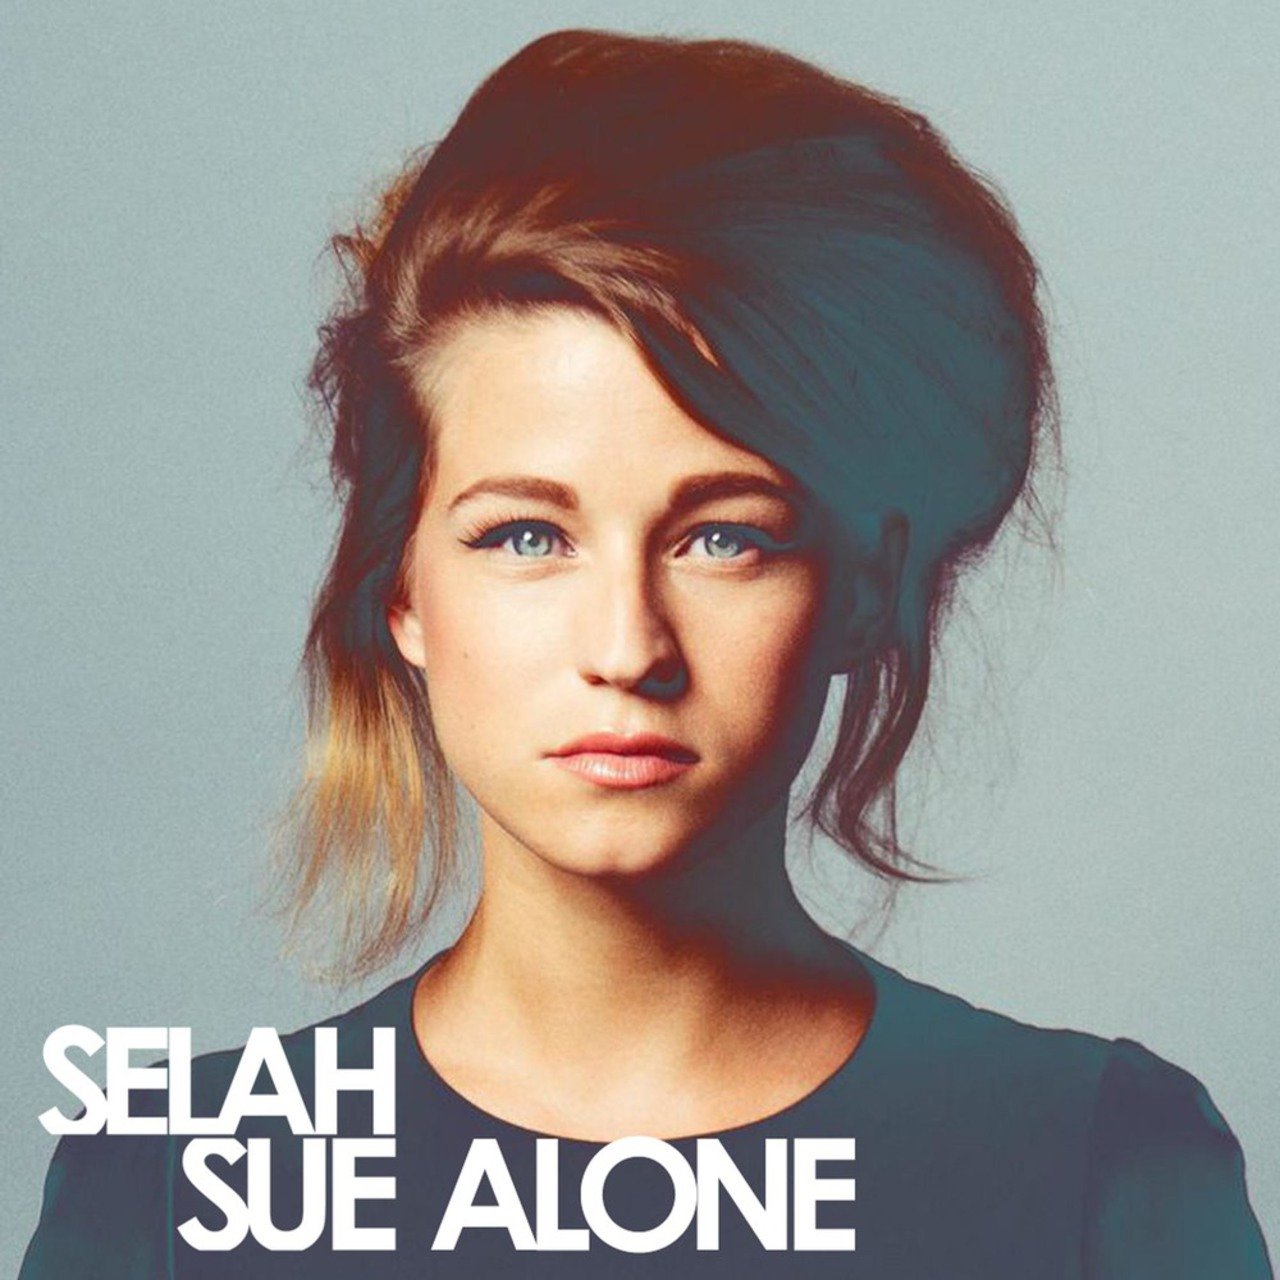 Selah Sue — Alone cover artwork